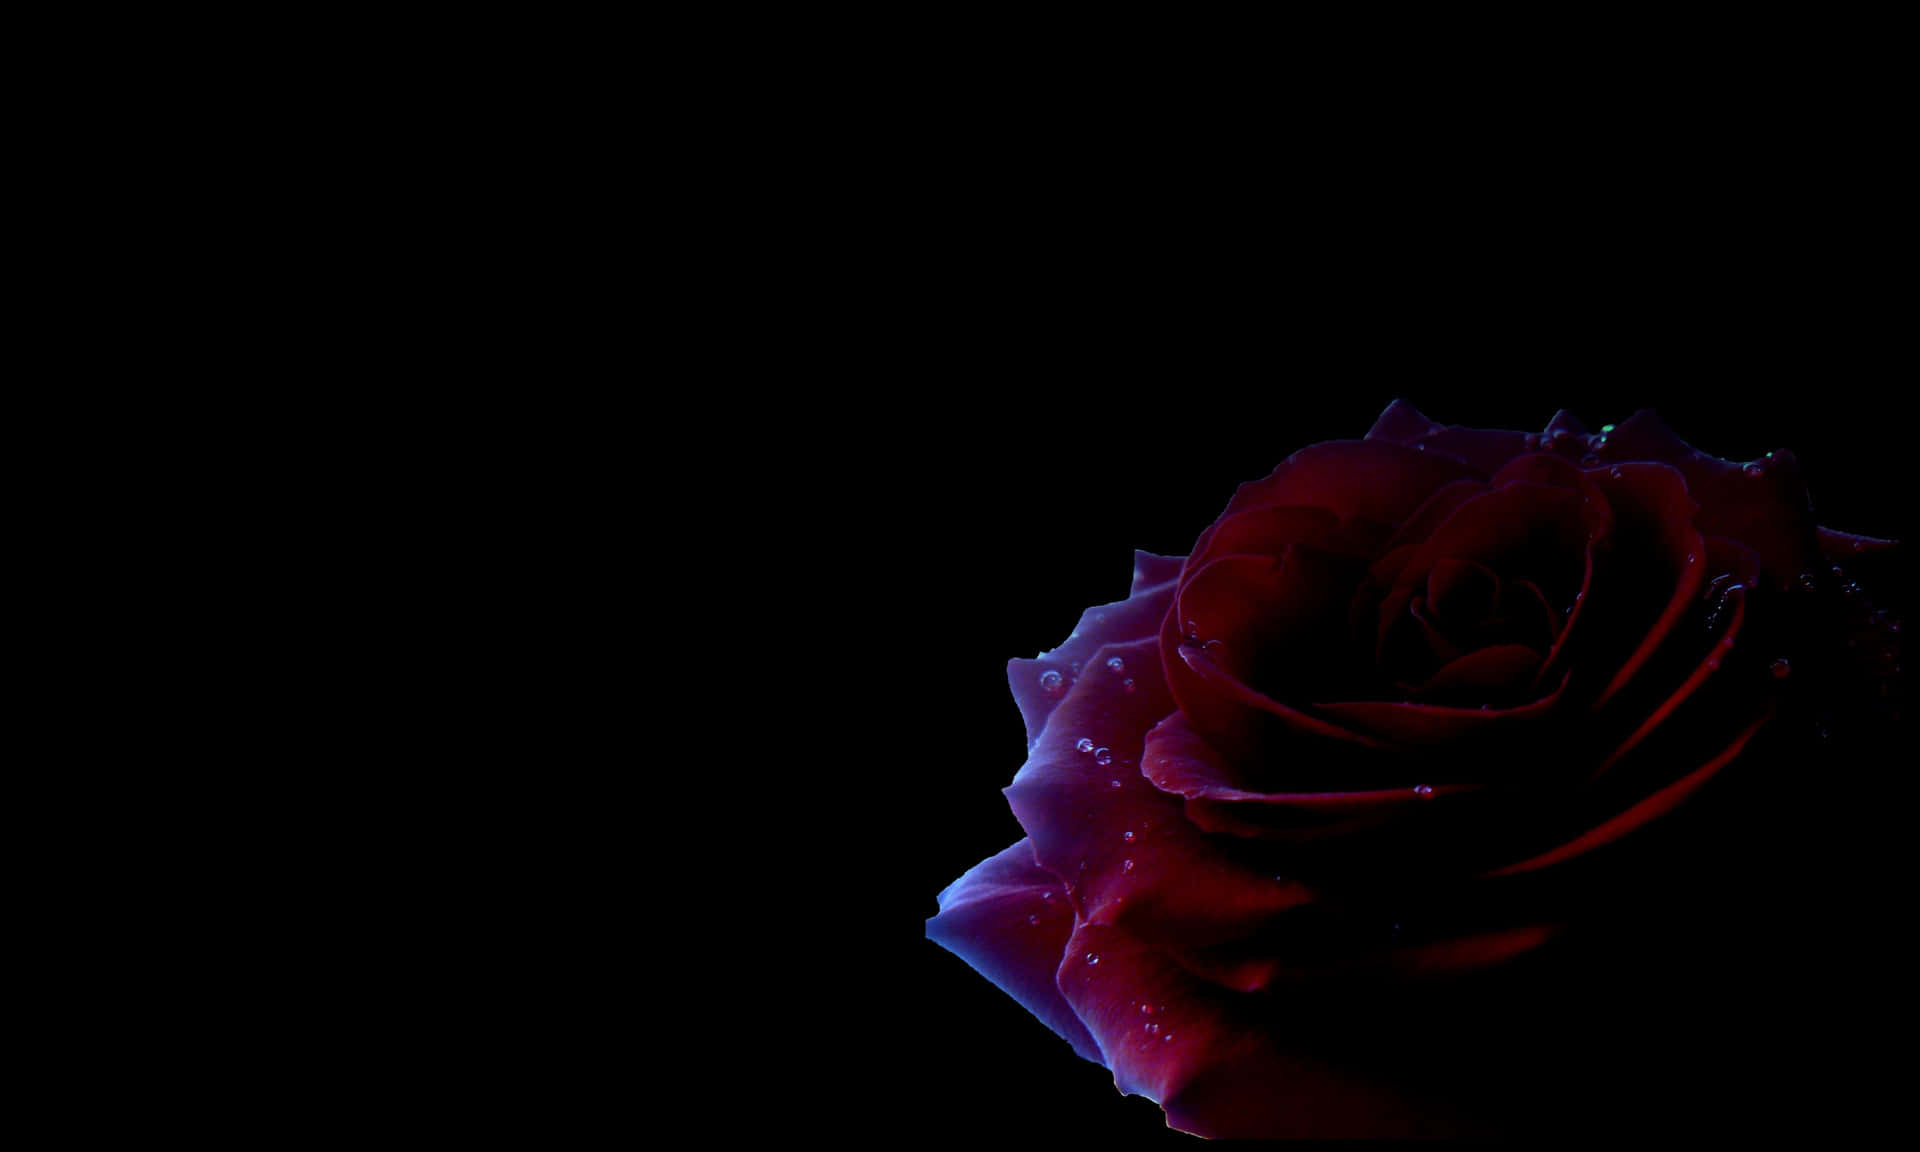 Einebeeindruckende Schwarze Rose In All Ihrer Dunklen, Geheimnisvollen Schönheit. Wallpaper